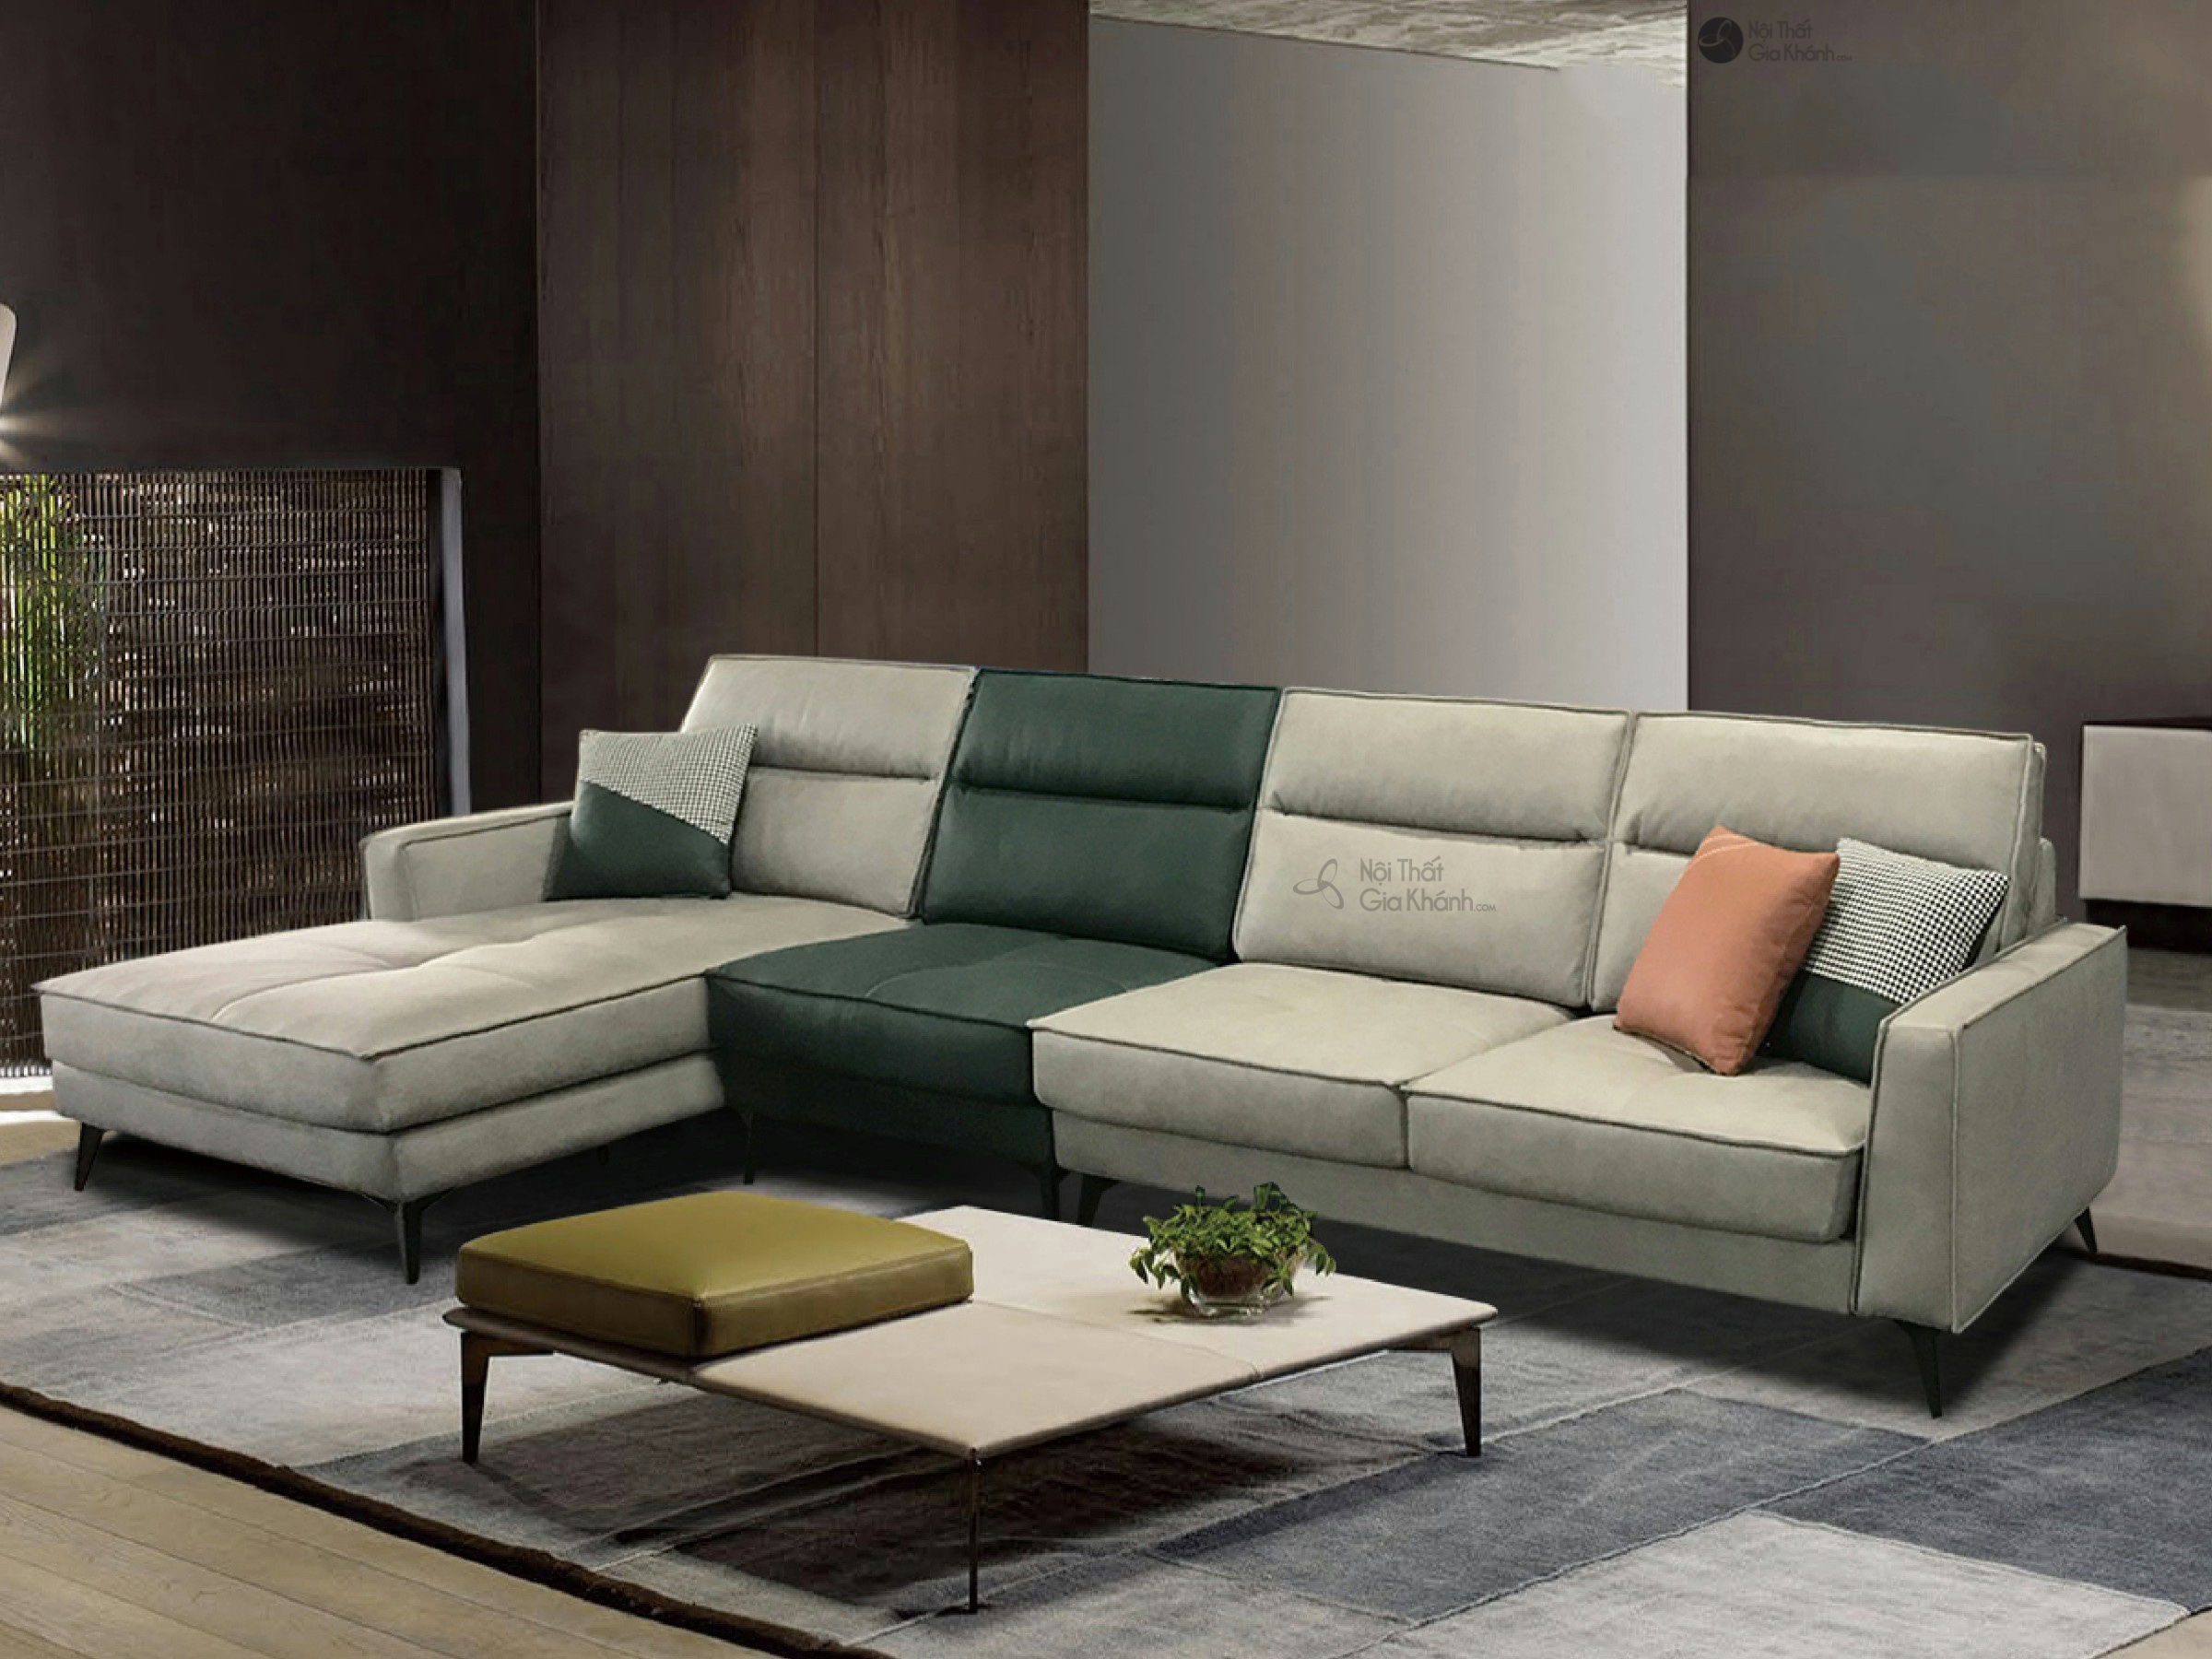 Bộ Sofa Vải 3 Băng Góc Phải SF-501B